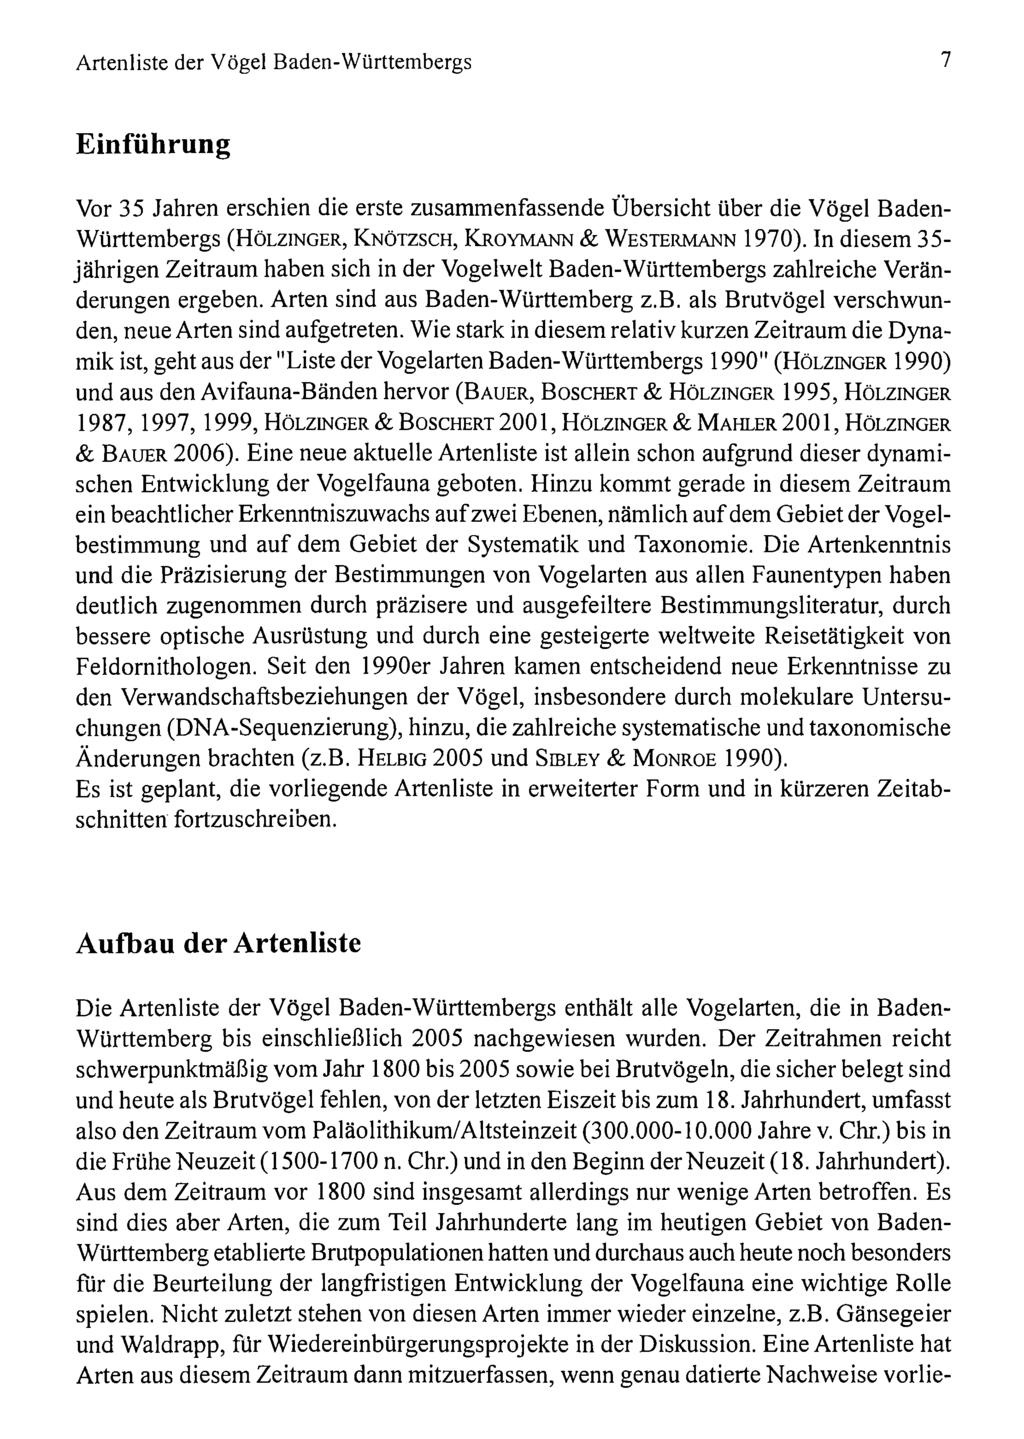 Ornithologische esellschaft Baden-Württemberg, download unter www.biologiezentrum.